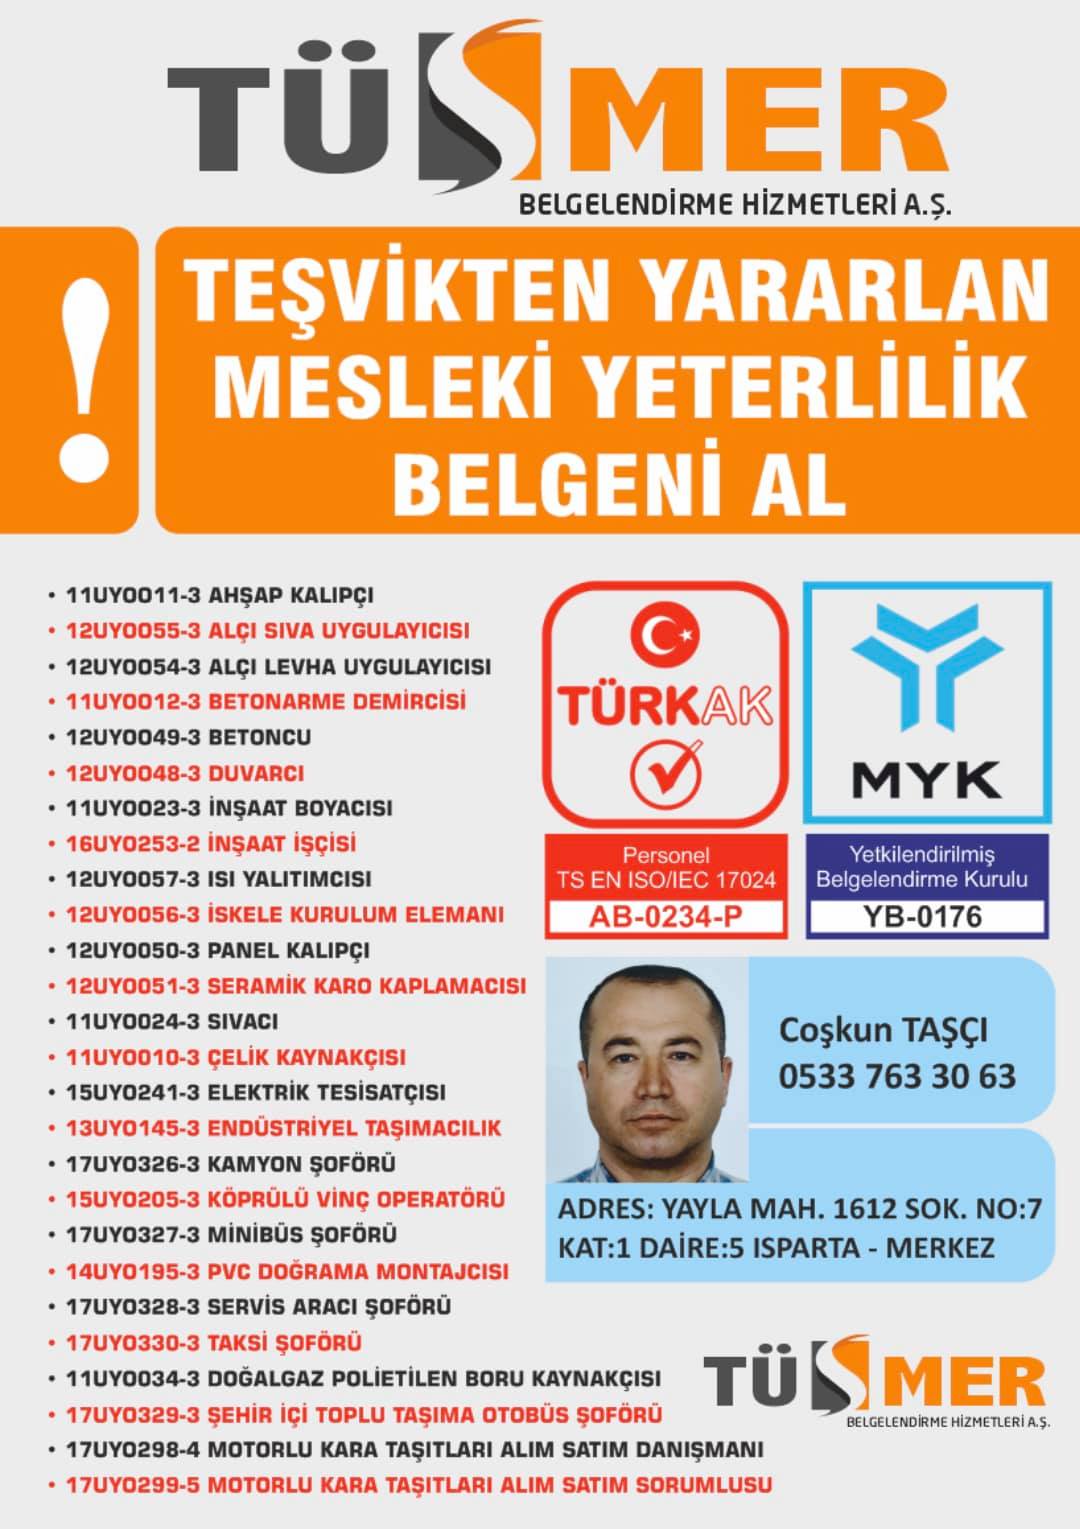 MYK MESLEKİ YETERLİLİK BELGESİ Hacıahmet Beyoğlu İstanbul